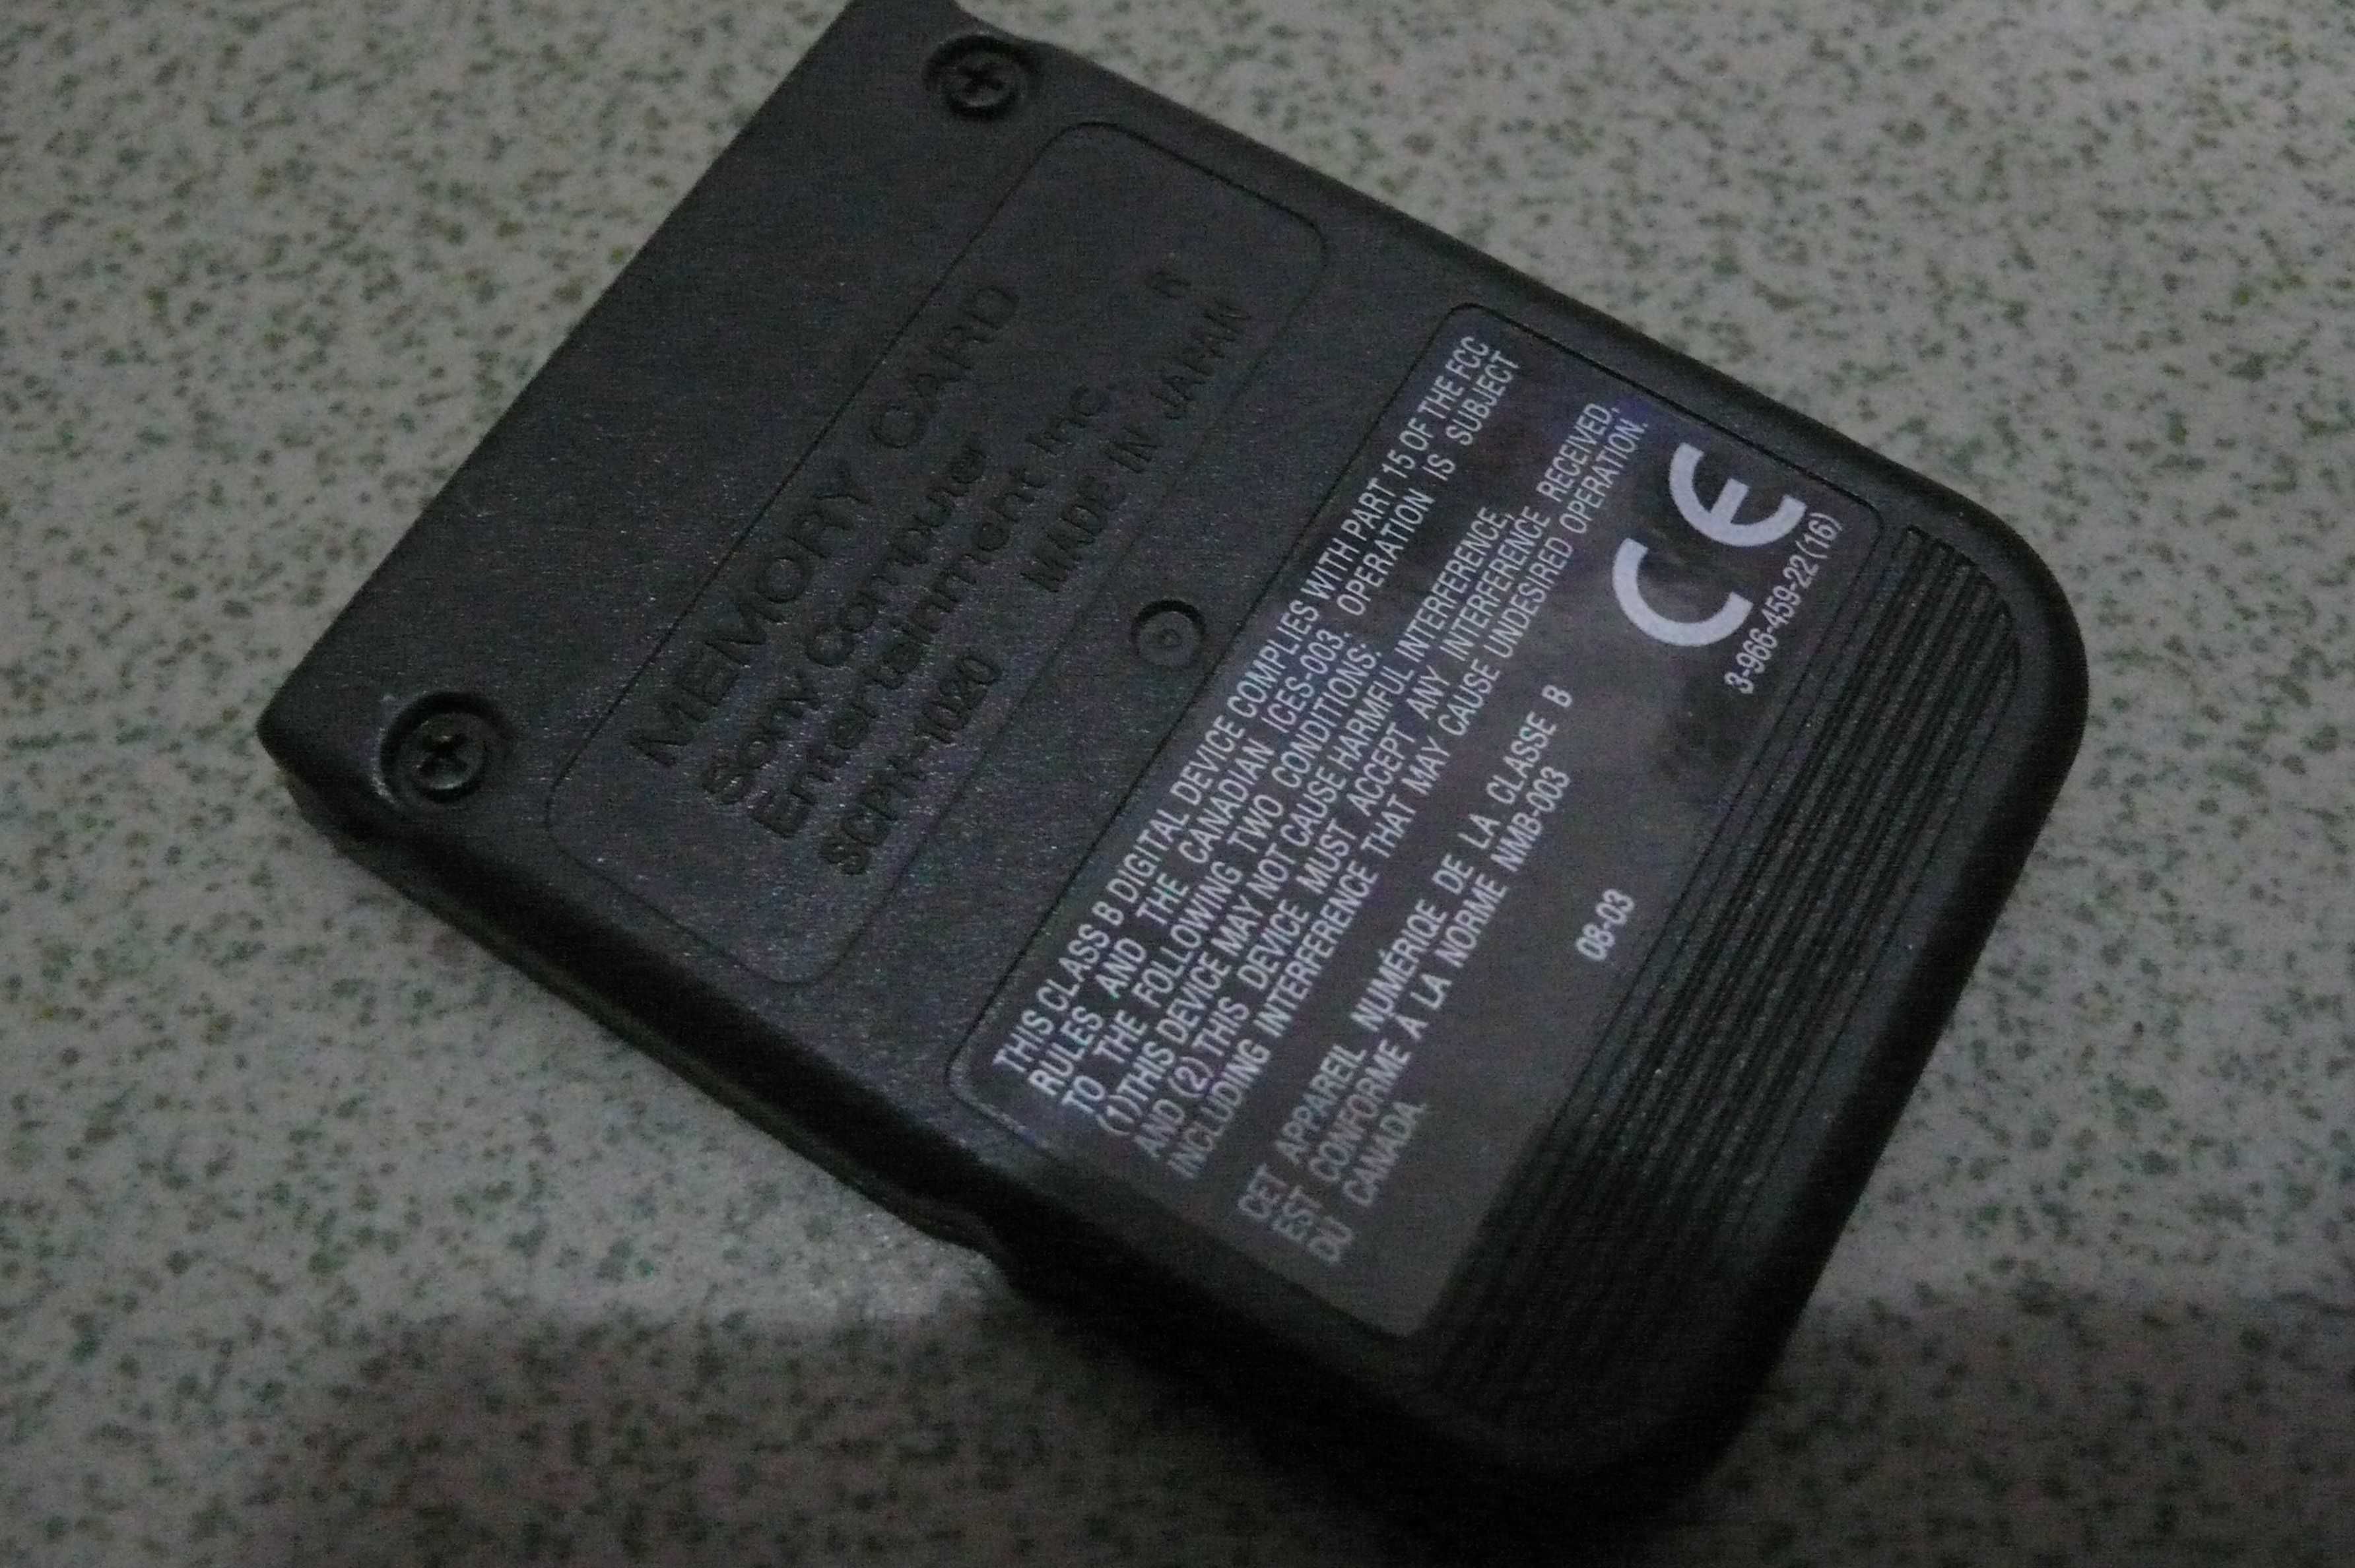 Karta pamięci do PSX oryginał SCPH-1020 black czarna Made in Japan